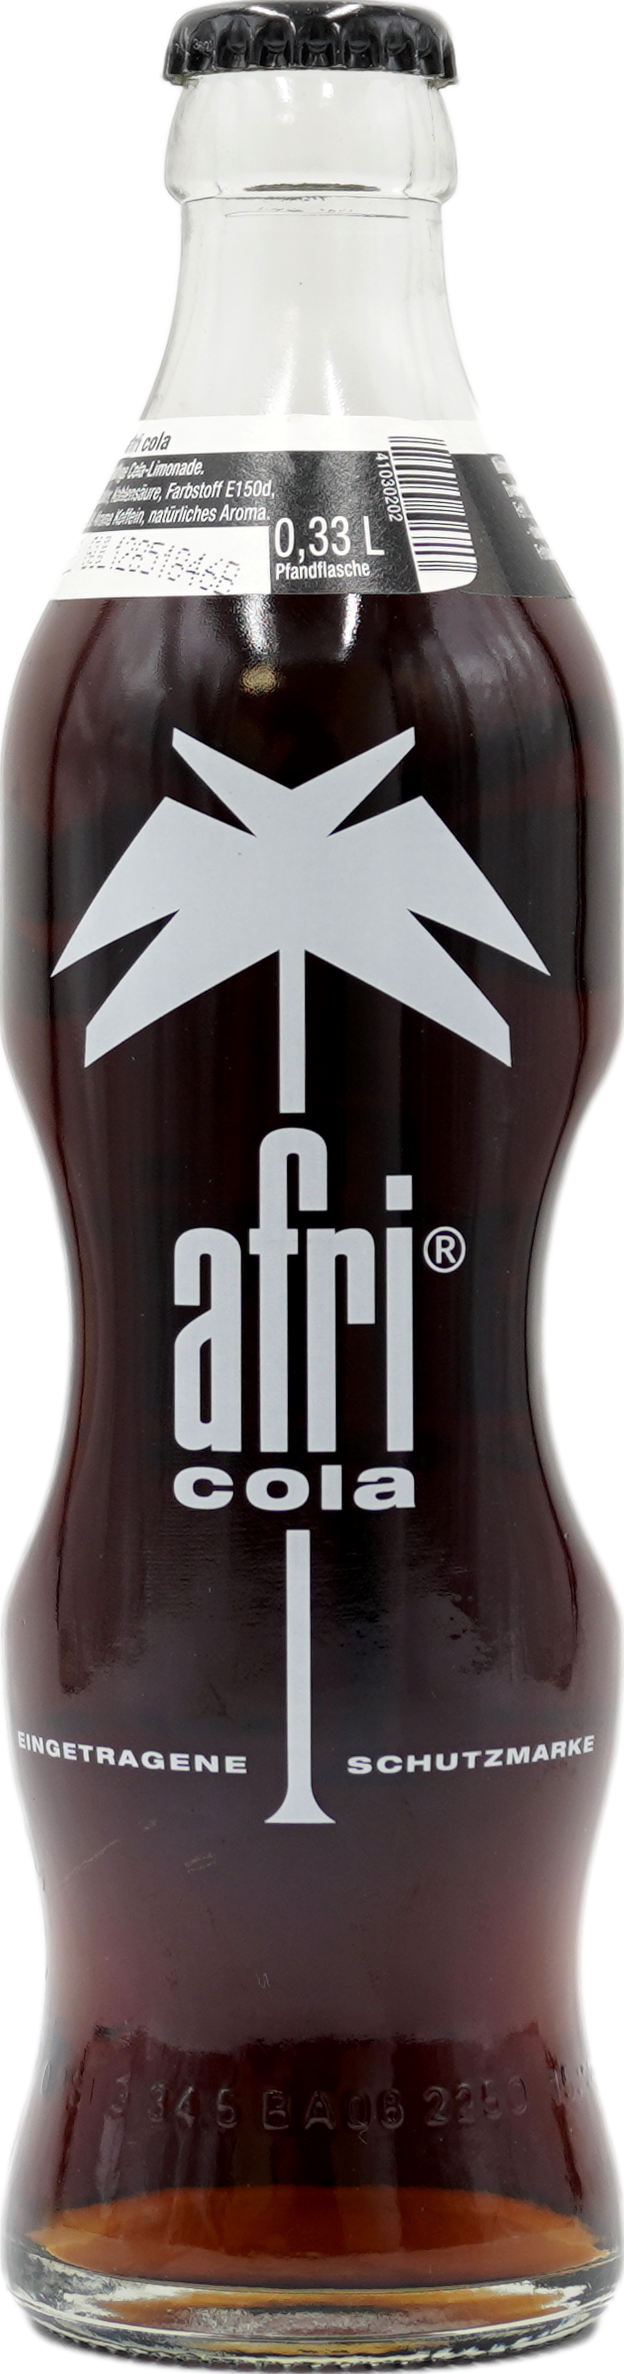 Afri-Cola jetzt online bestellen & liefern lassen!